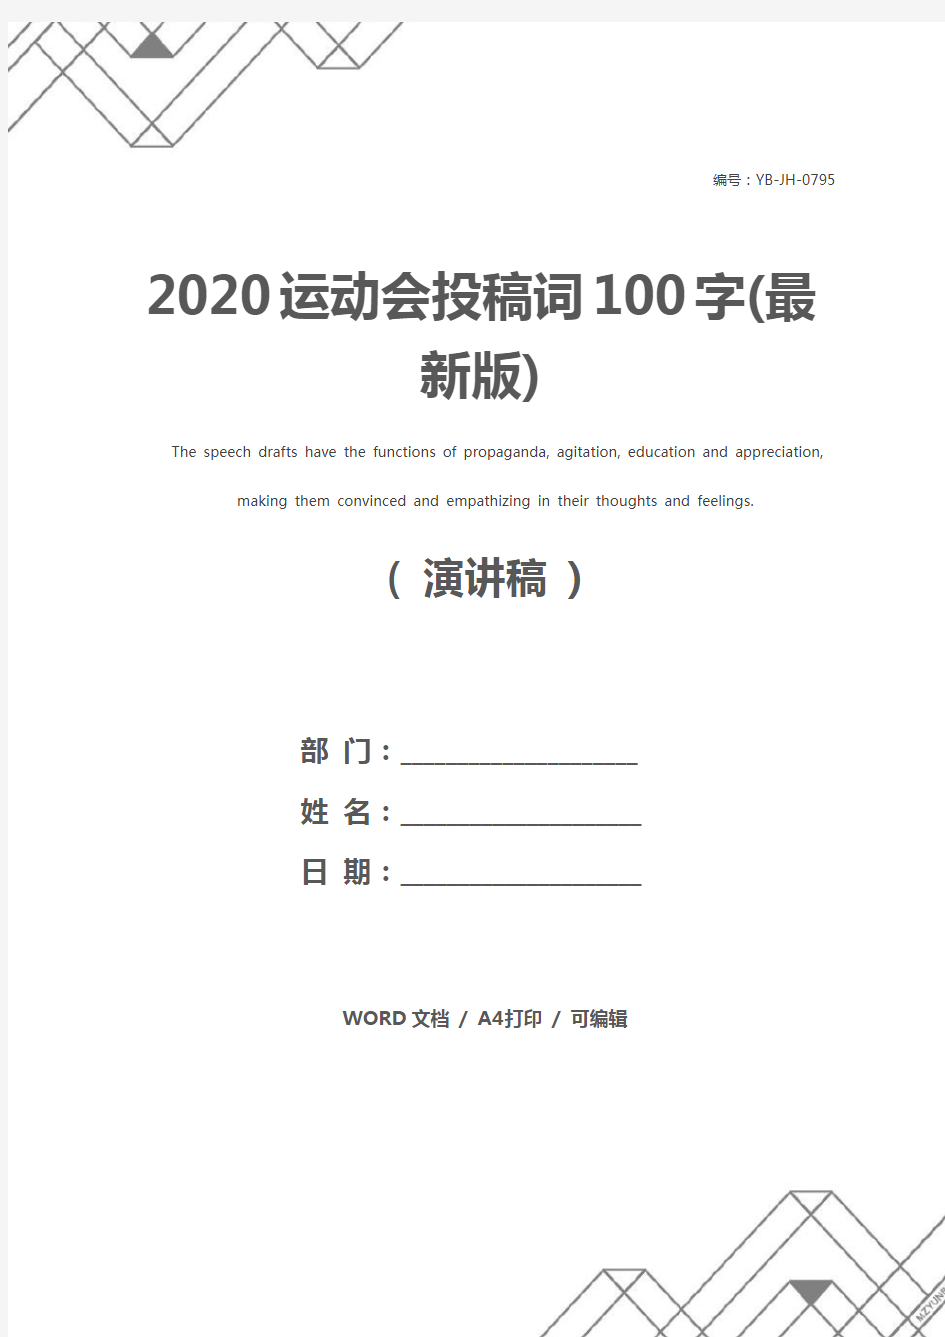 2020运动会投稿词100字(最新版)